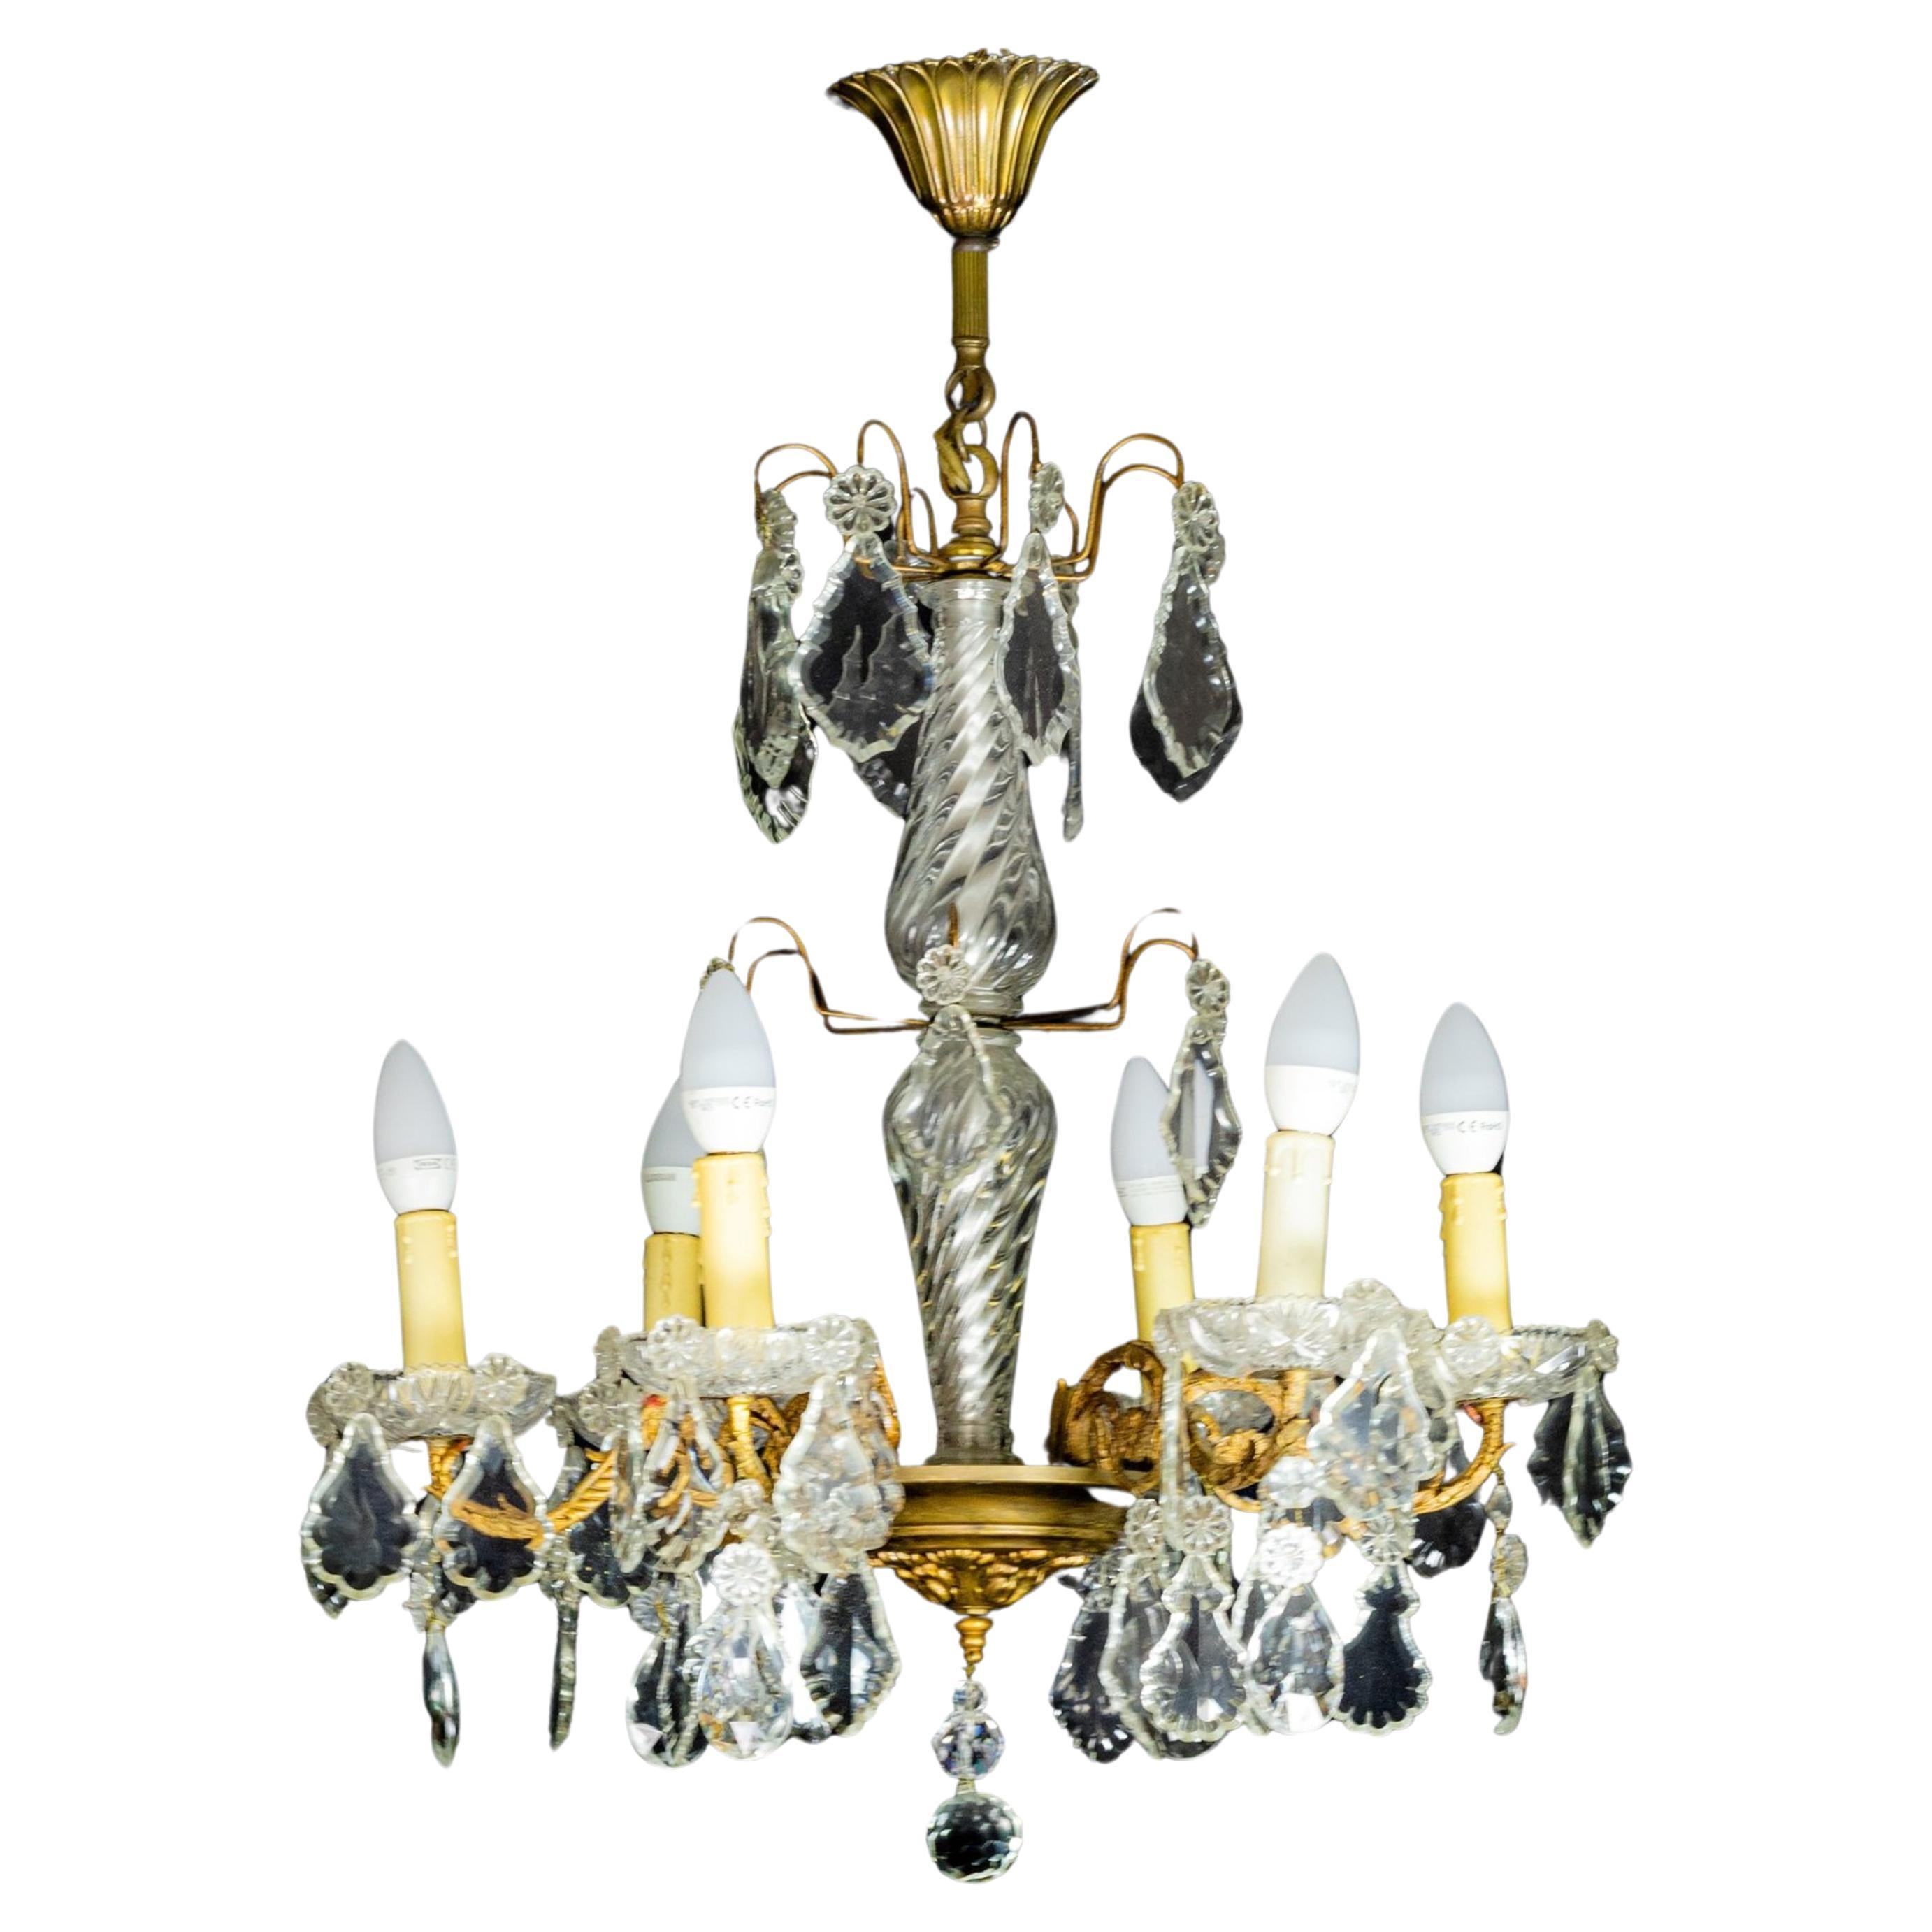 Lustre de style Louis XV en bronze avec pendentifs et fleurons en cristal et verre teinté, complété et recâblé avec du verre.
chandeliers et six douilles. Recâblé.

Le lustre est actuellement câblé pour des lampes LED conformes aux normes de l'Union